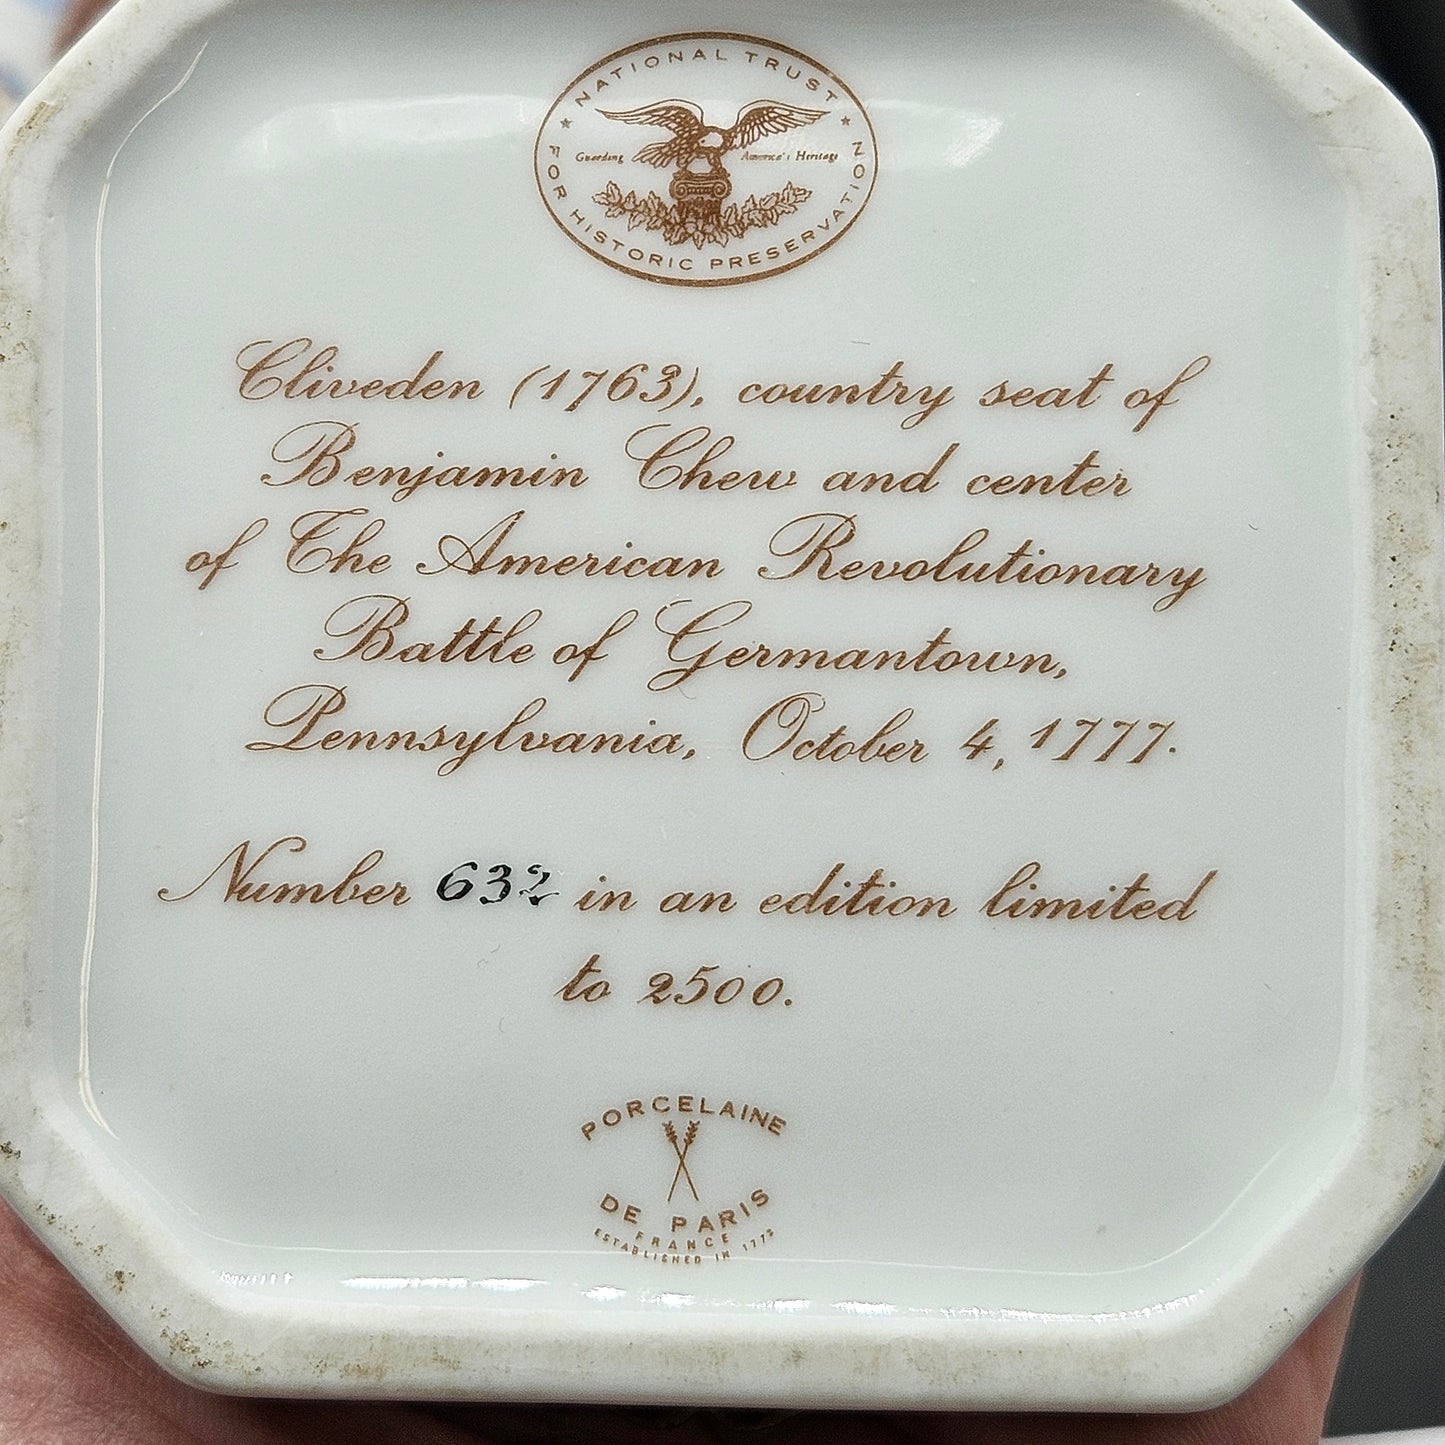 Set of National Trust Porcelain De Paris Collection 4 Trinket Boxes #632